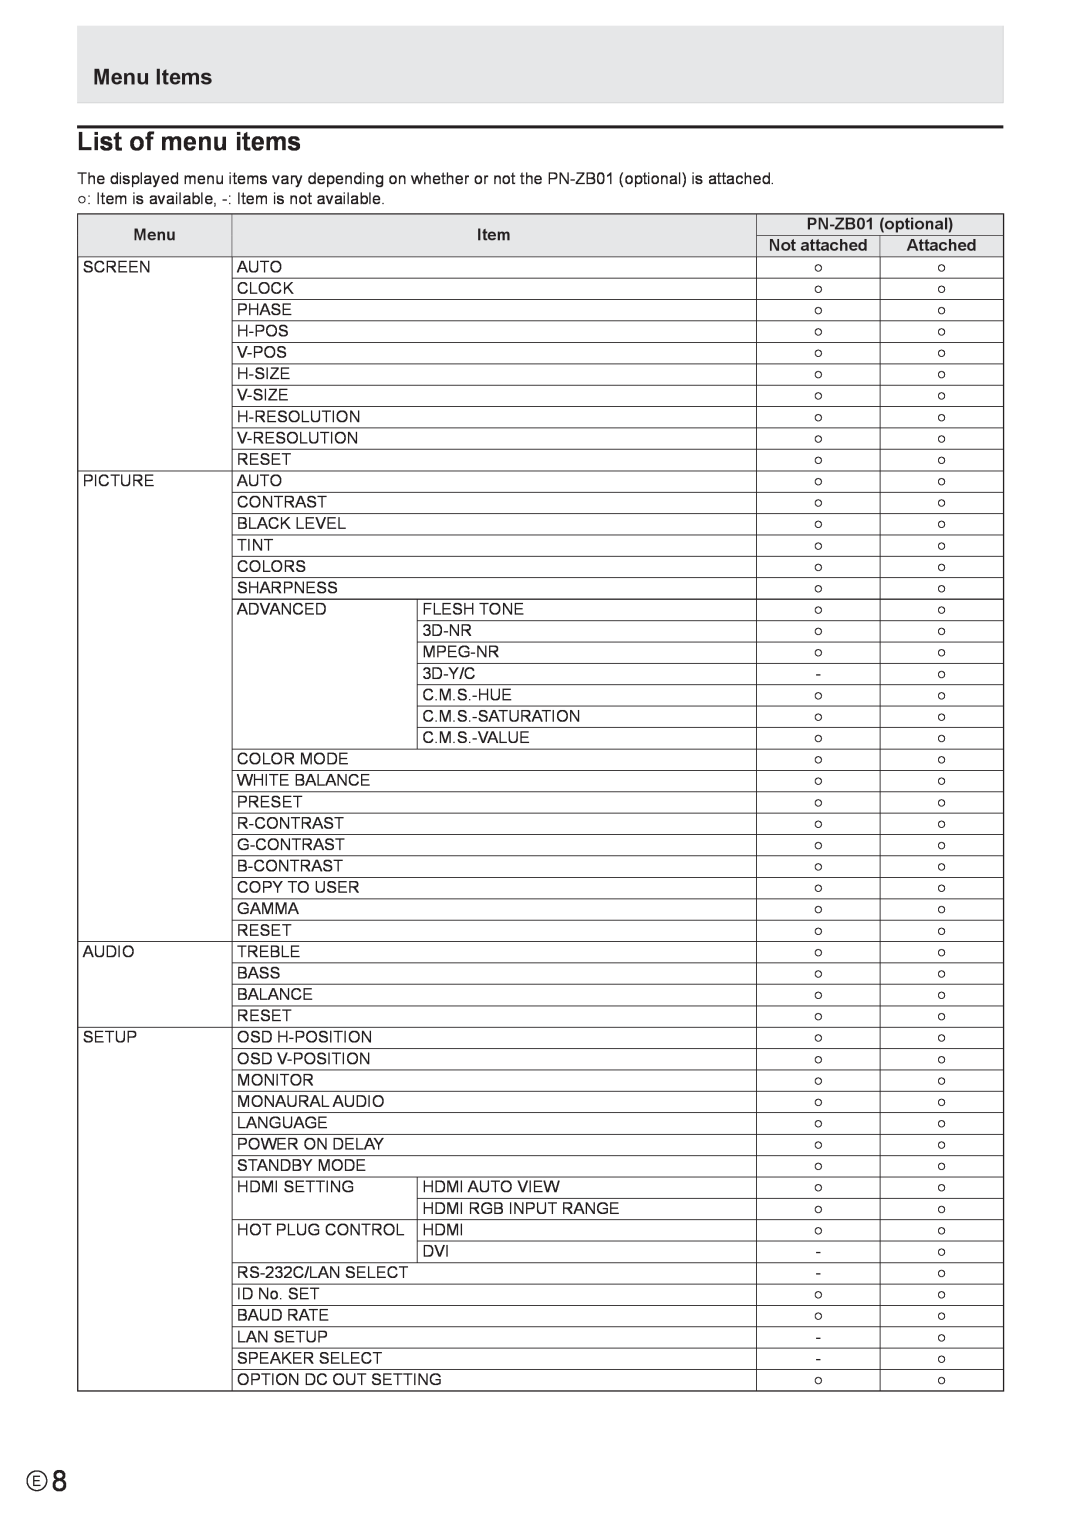 Sharp PN-E601, PN-E521 manual List of menu items, Menu Items 